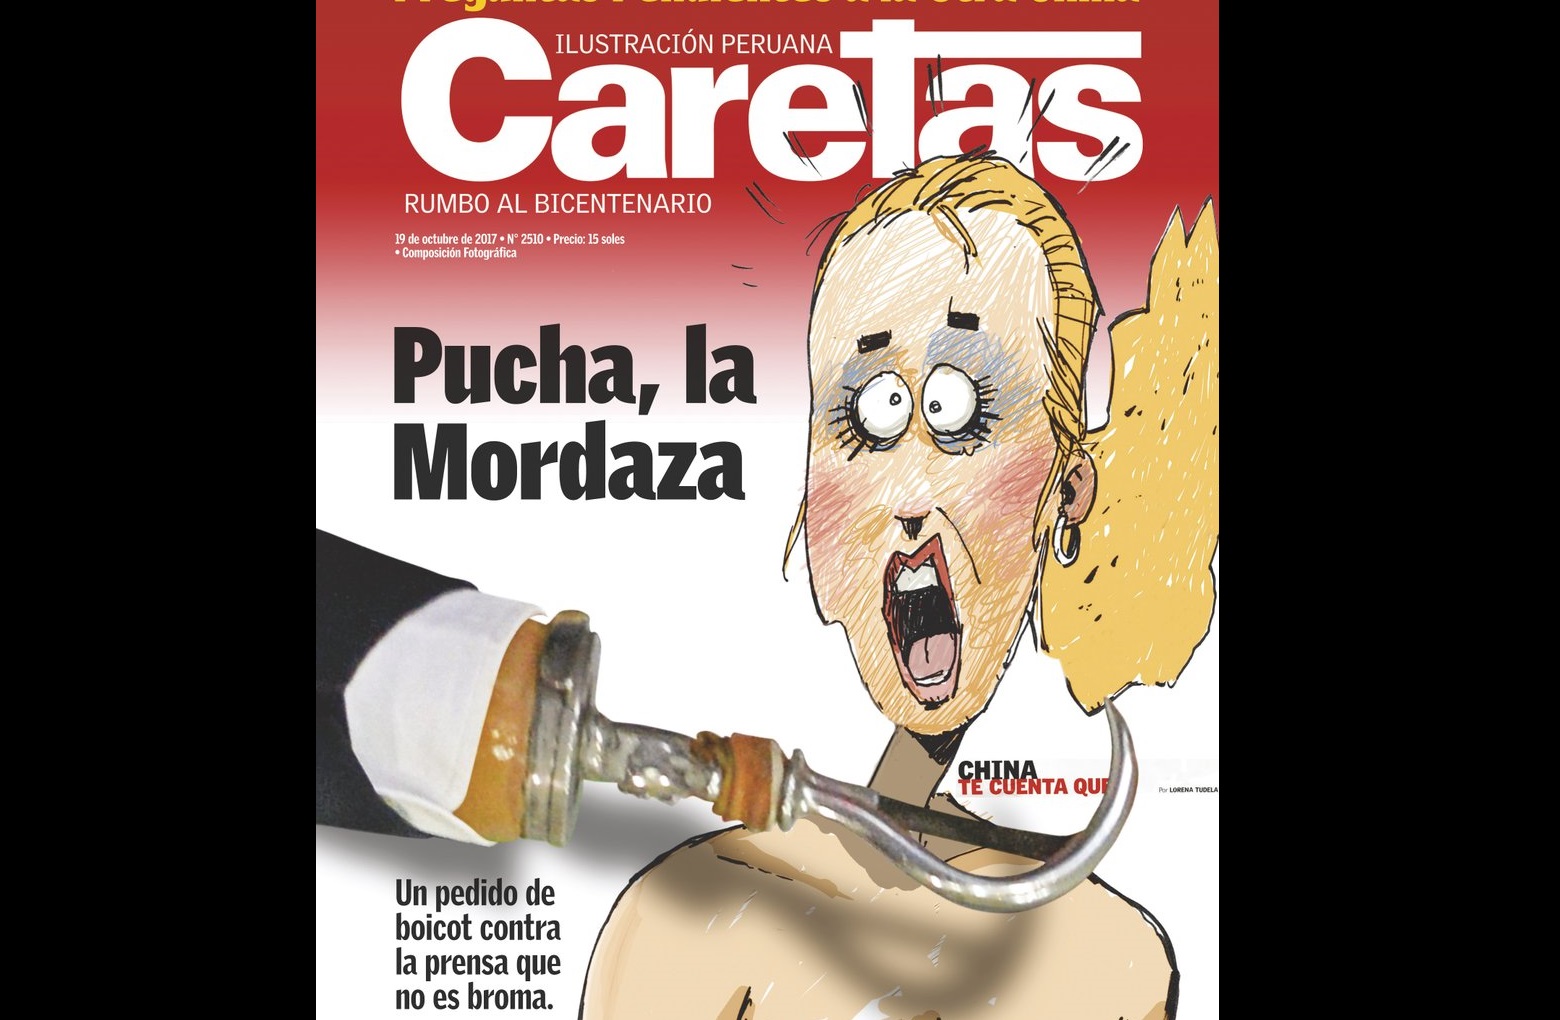 La portada de hoy en Caretas. Imagen: Caretas